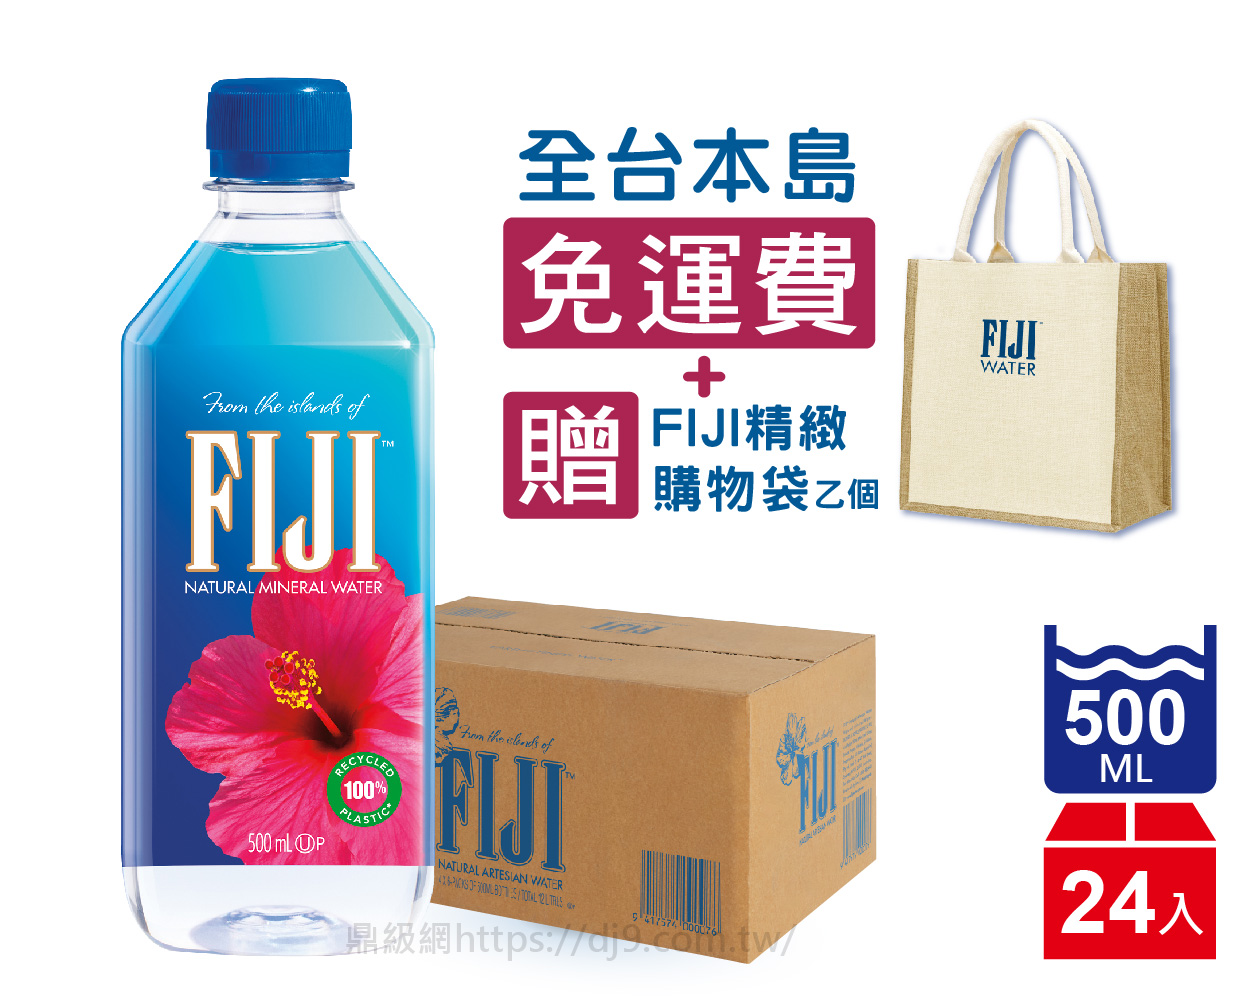 斐濟水FIJI Water天然礦泉水(500mlx24入-免運費+贈精緻購物袋)